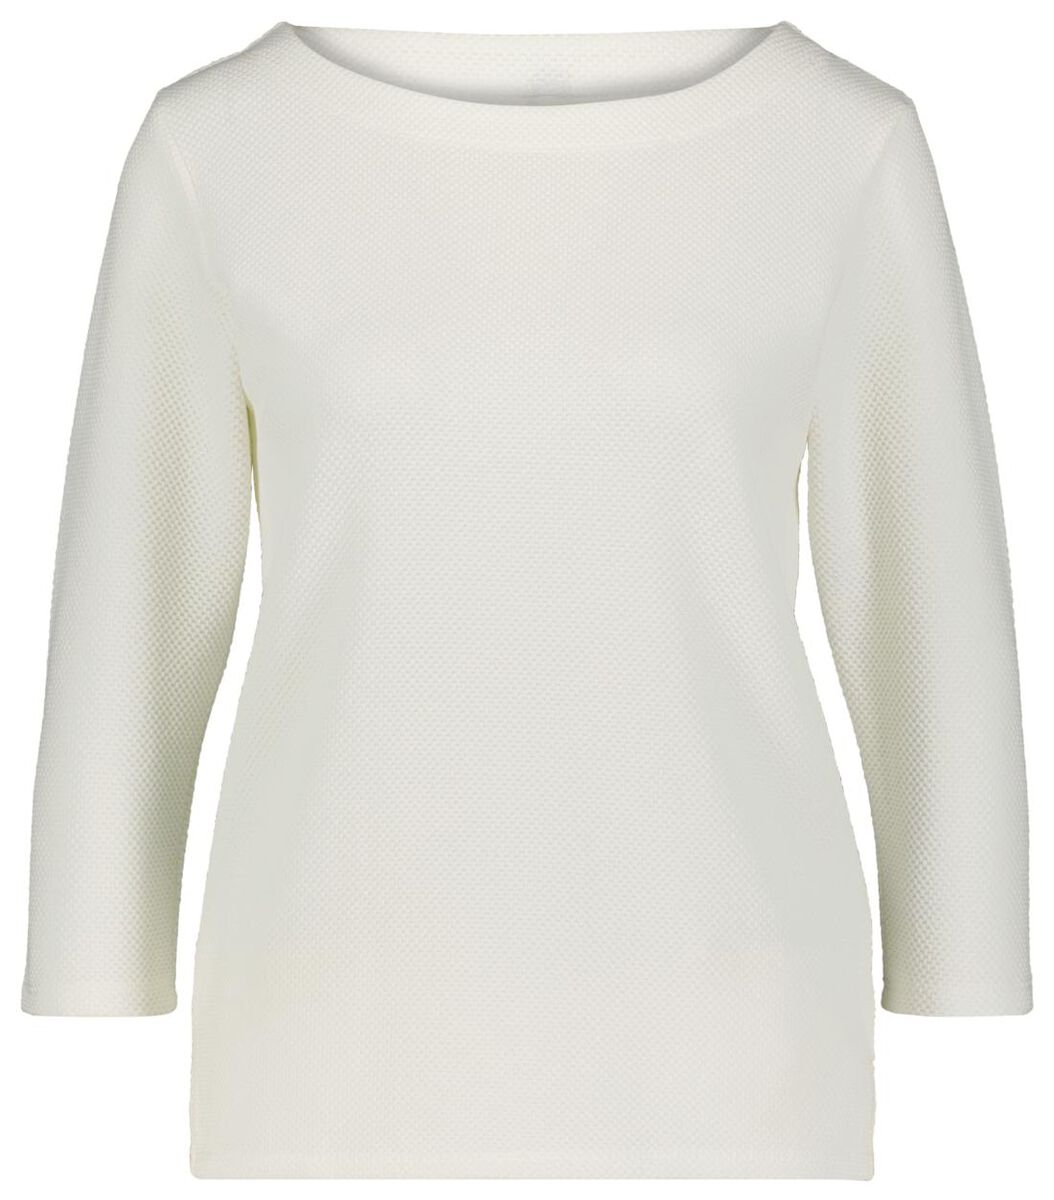 t-shirt femme relief blanc cassé L - 36289659 - HEMA